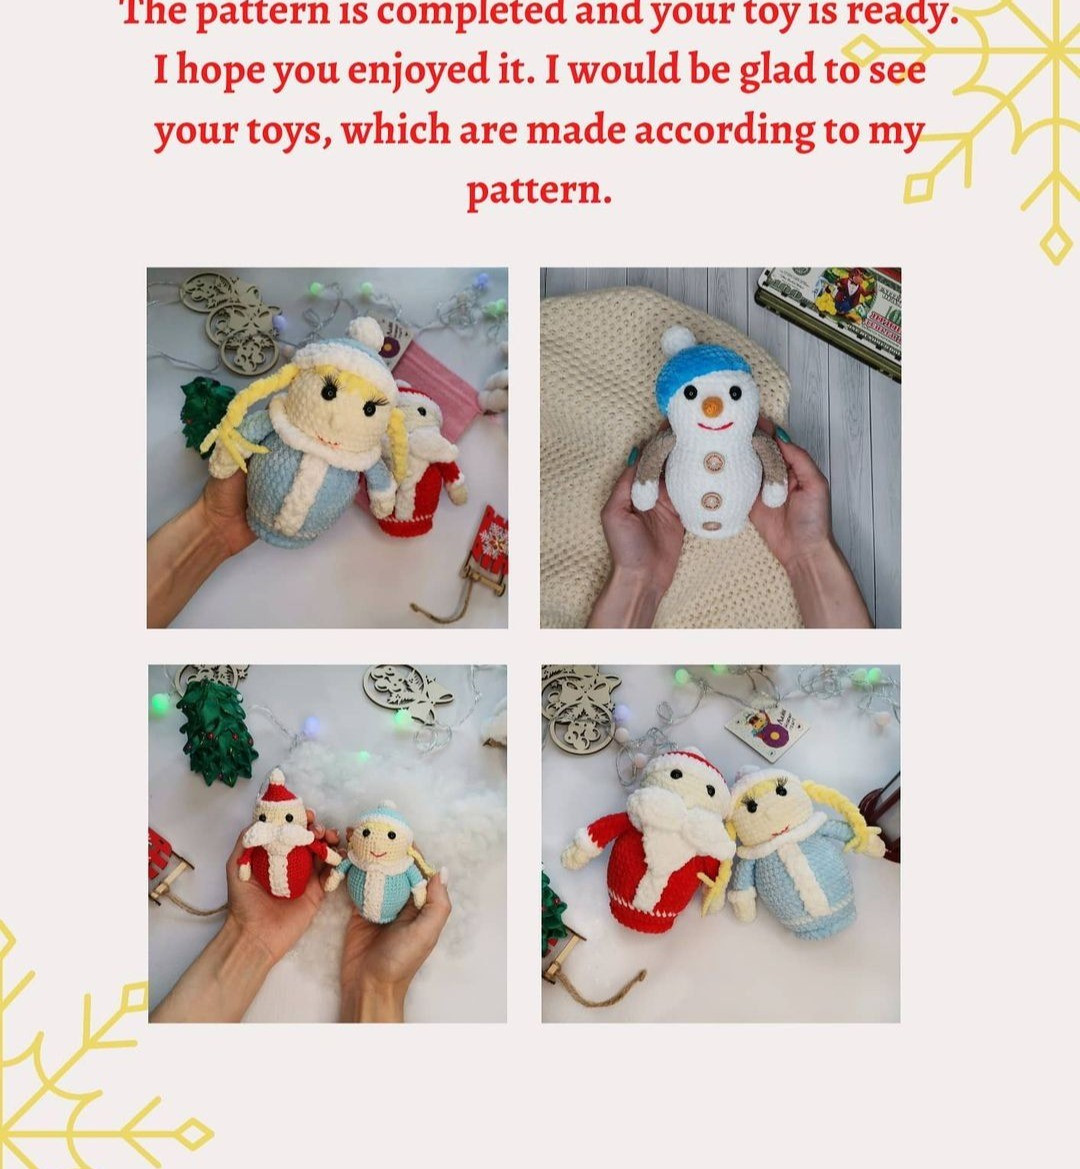 free crochet pattern santa claus, snowman